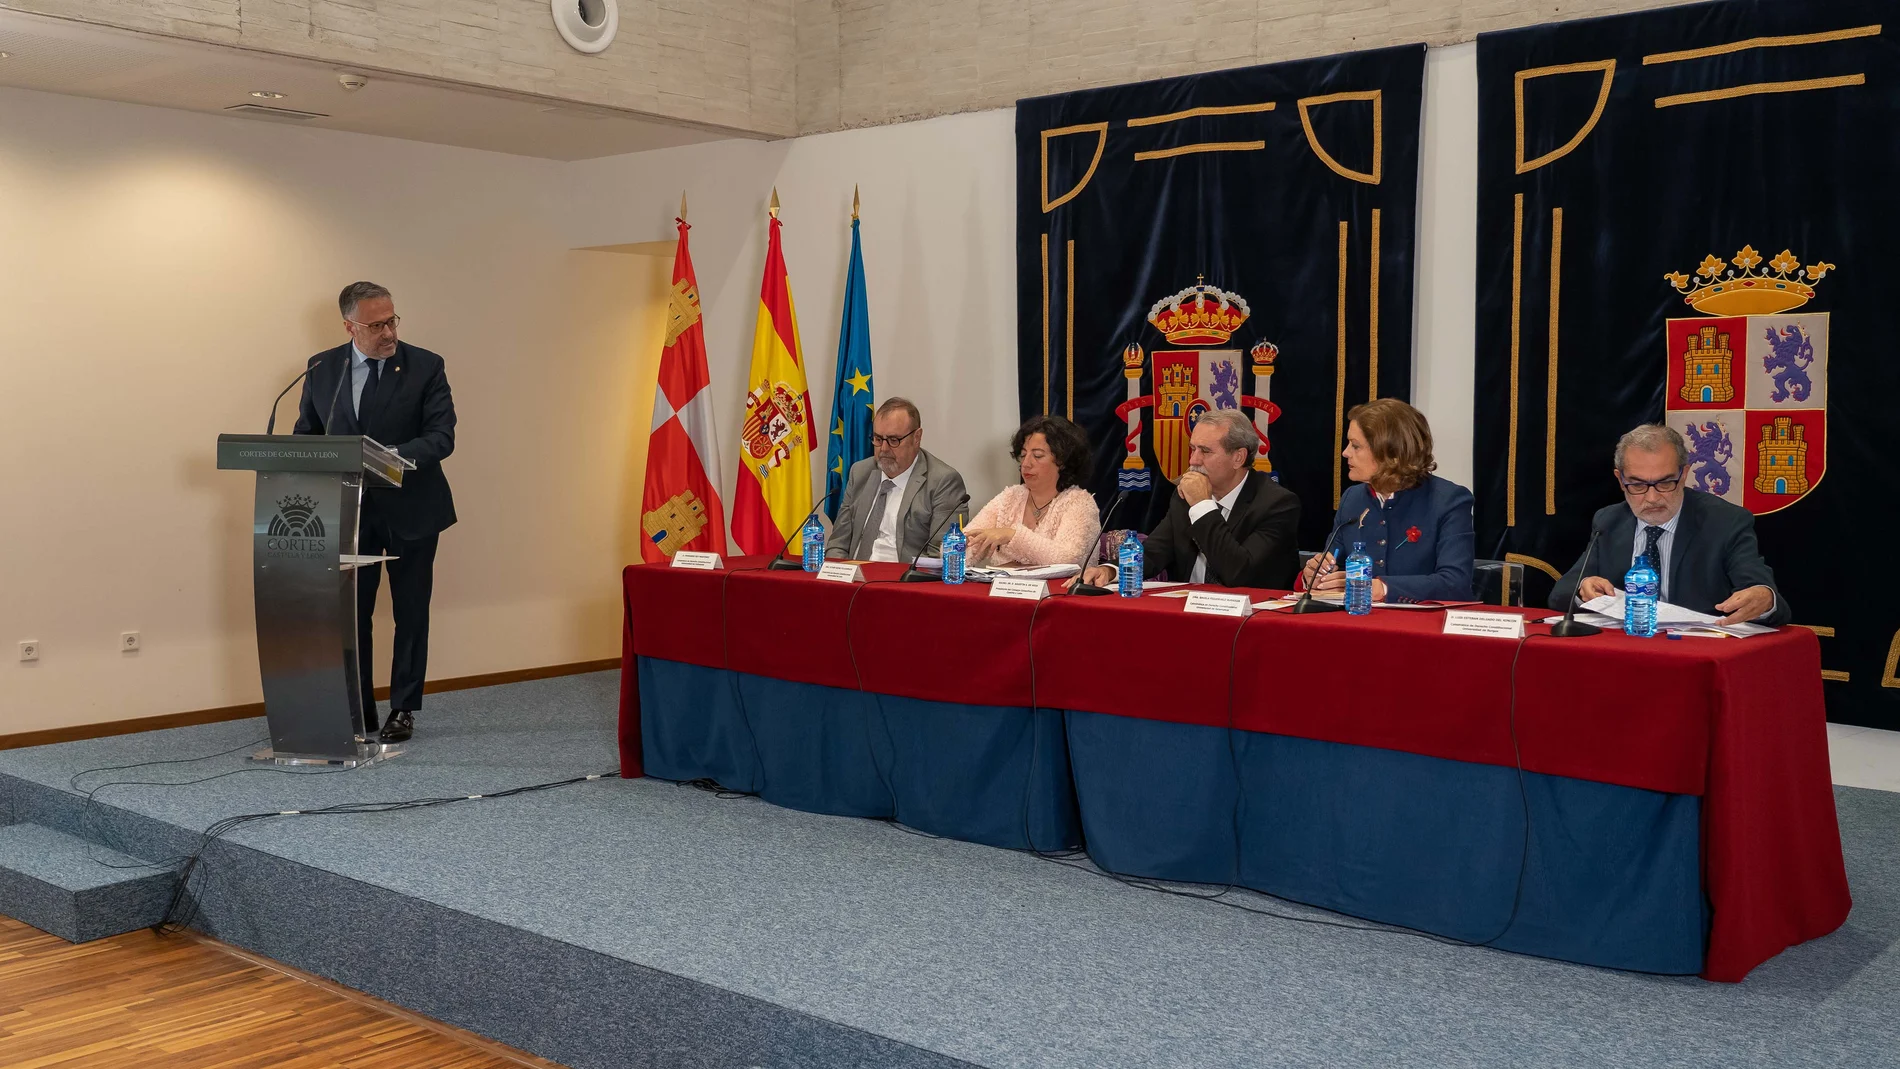 El presidente de las Cortes, Carlos Pollán, inaugura la jornada sobre la Constitución organizada por el Consejo Consultivo de Castilla y León